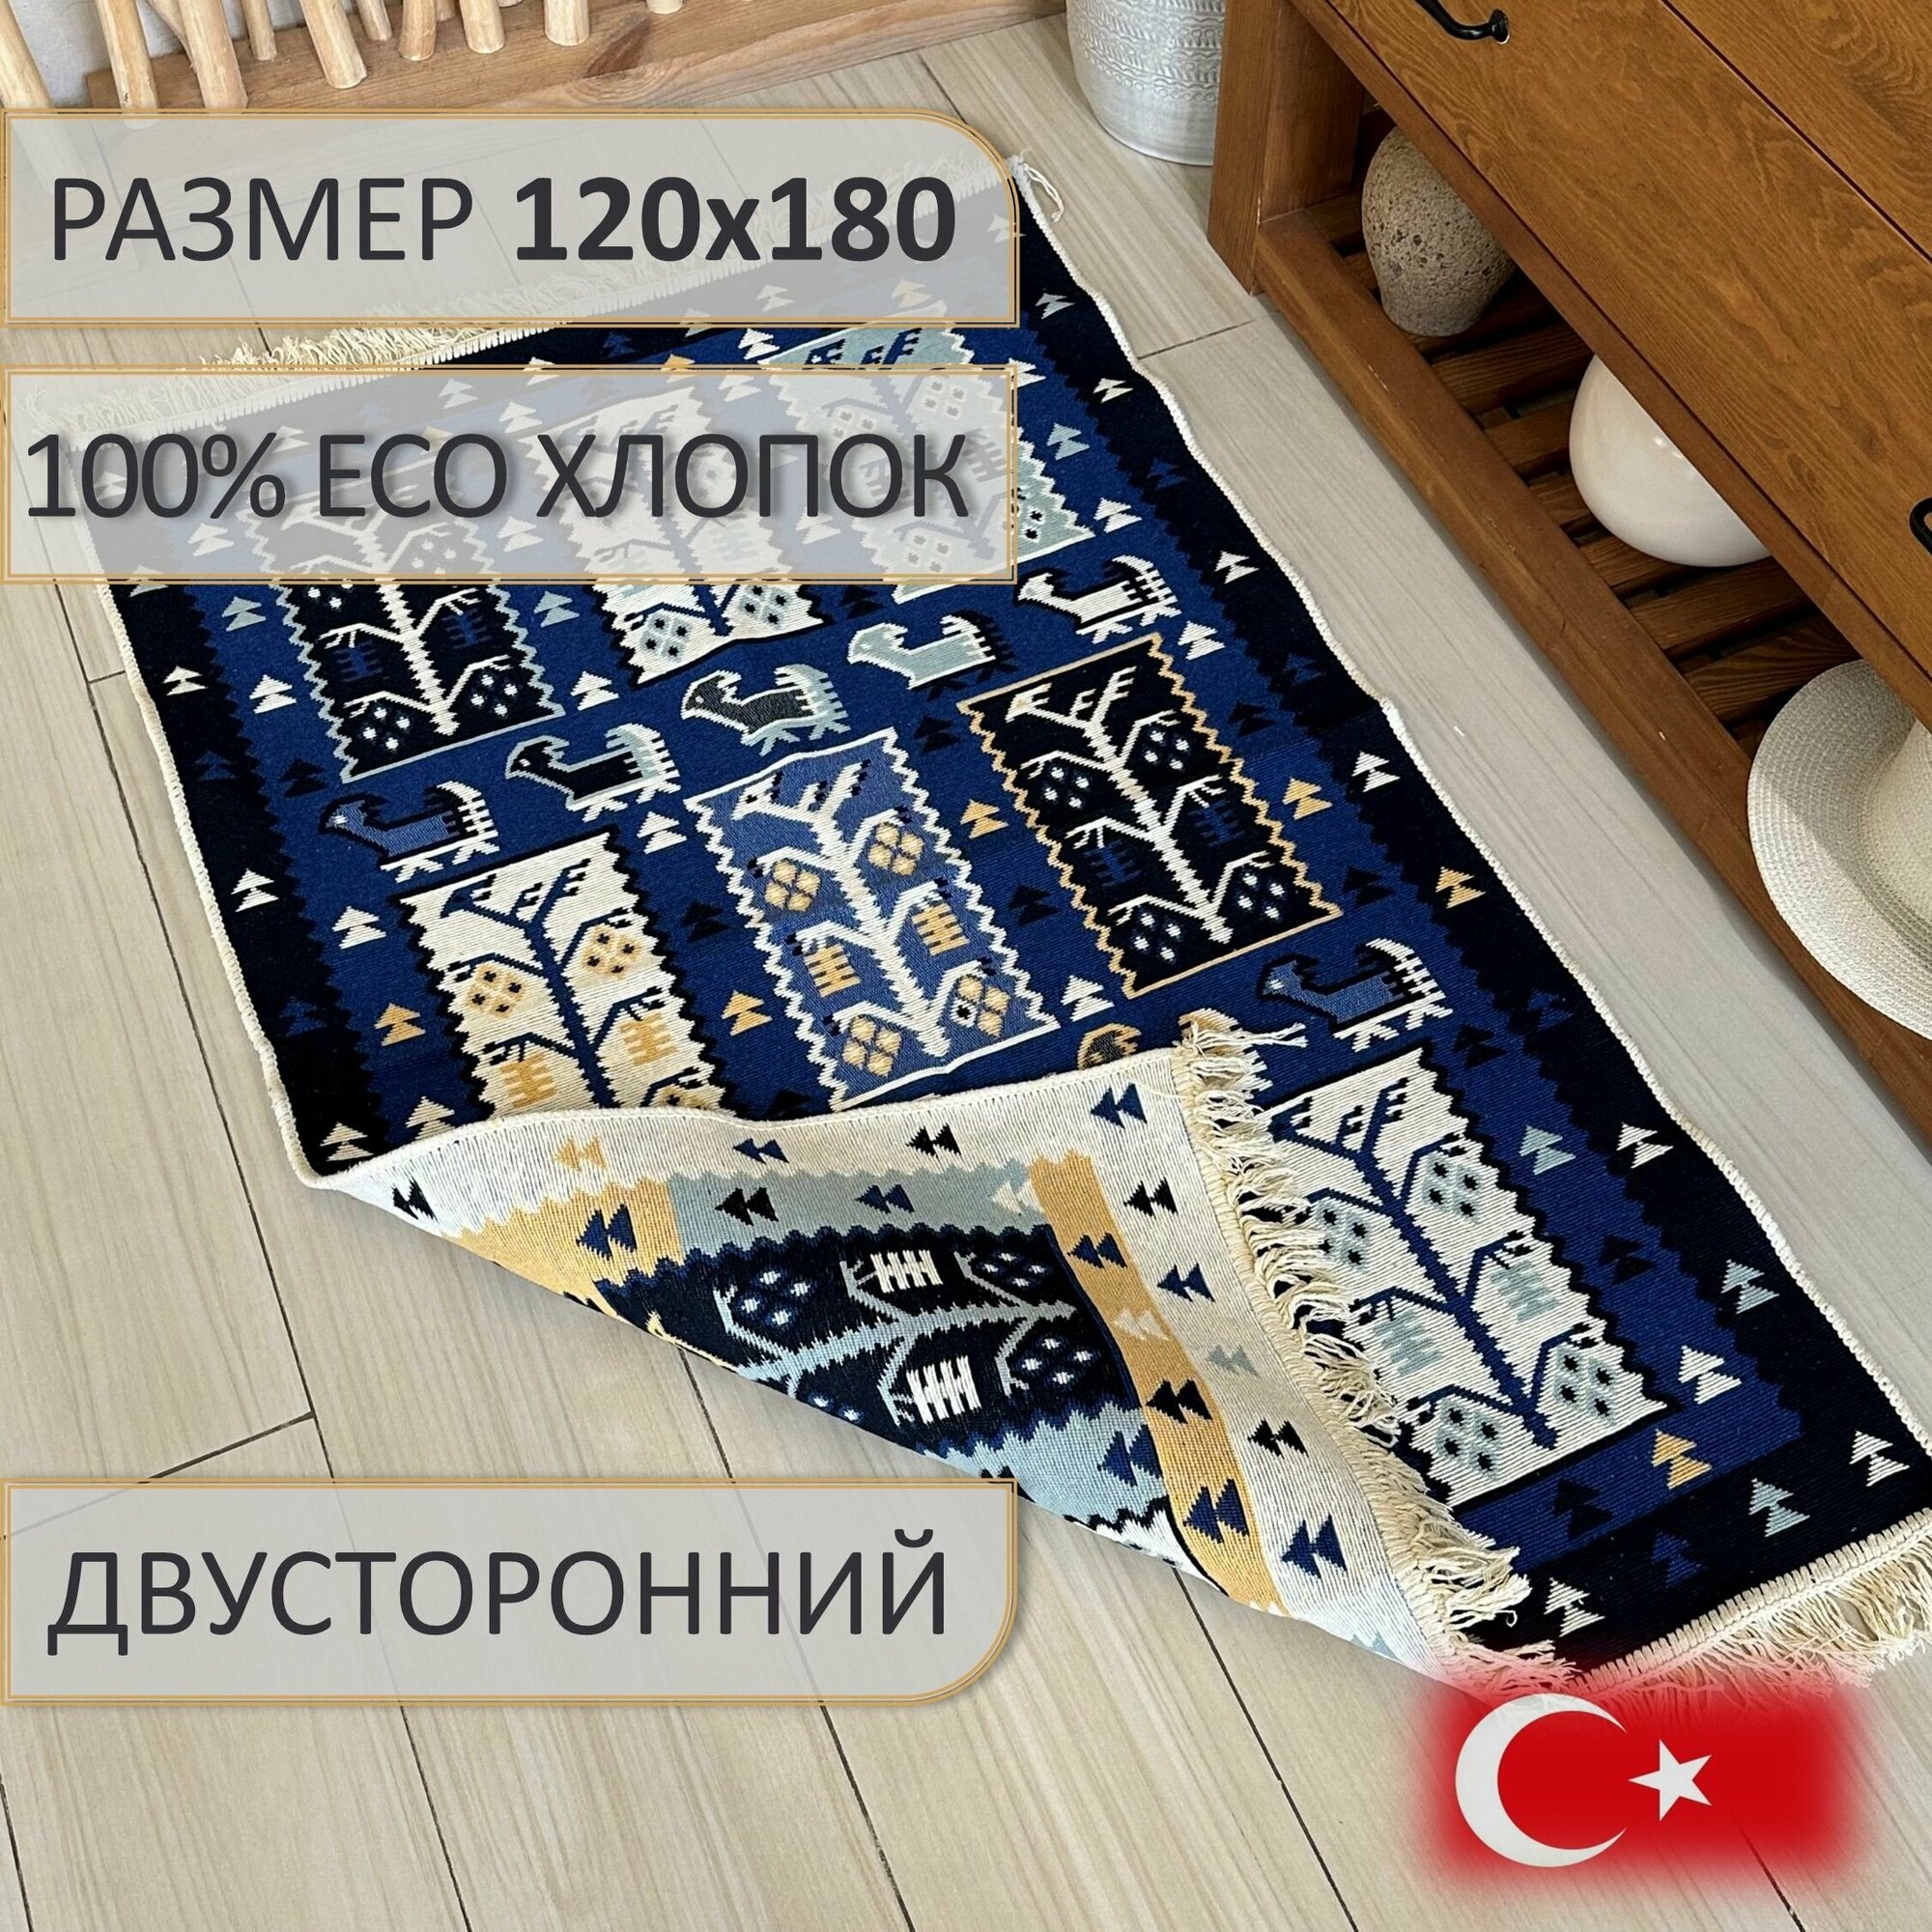 Ковер безворсовый, ковер турецкий, килим, Lama, 120x180 см, двусторонний